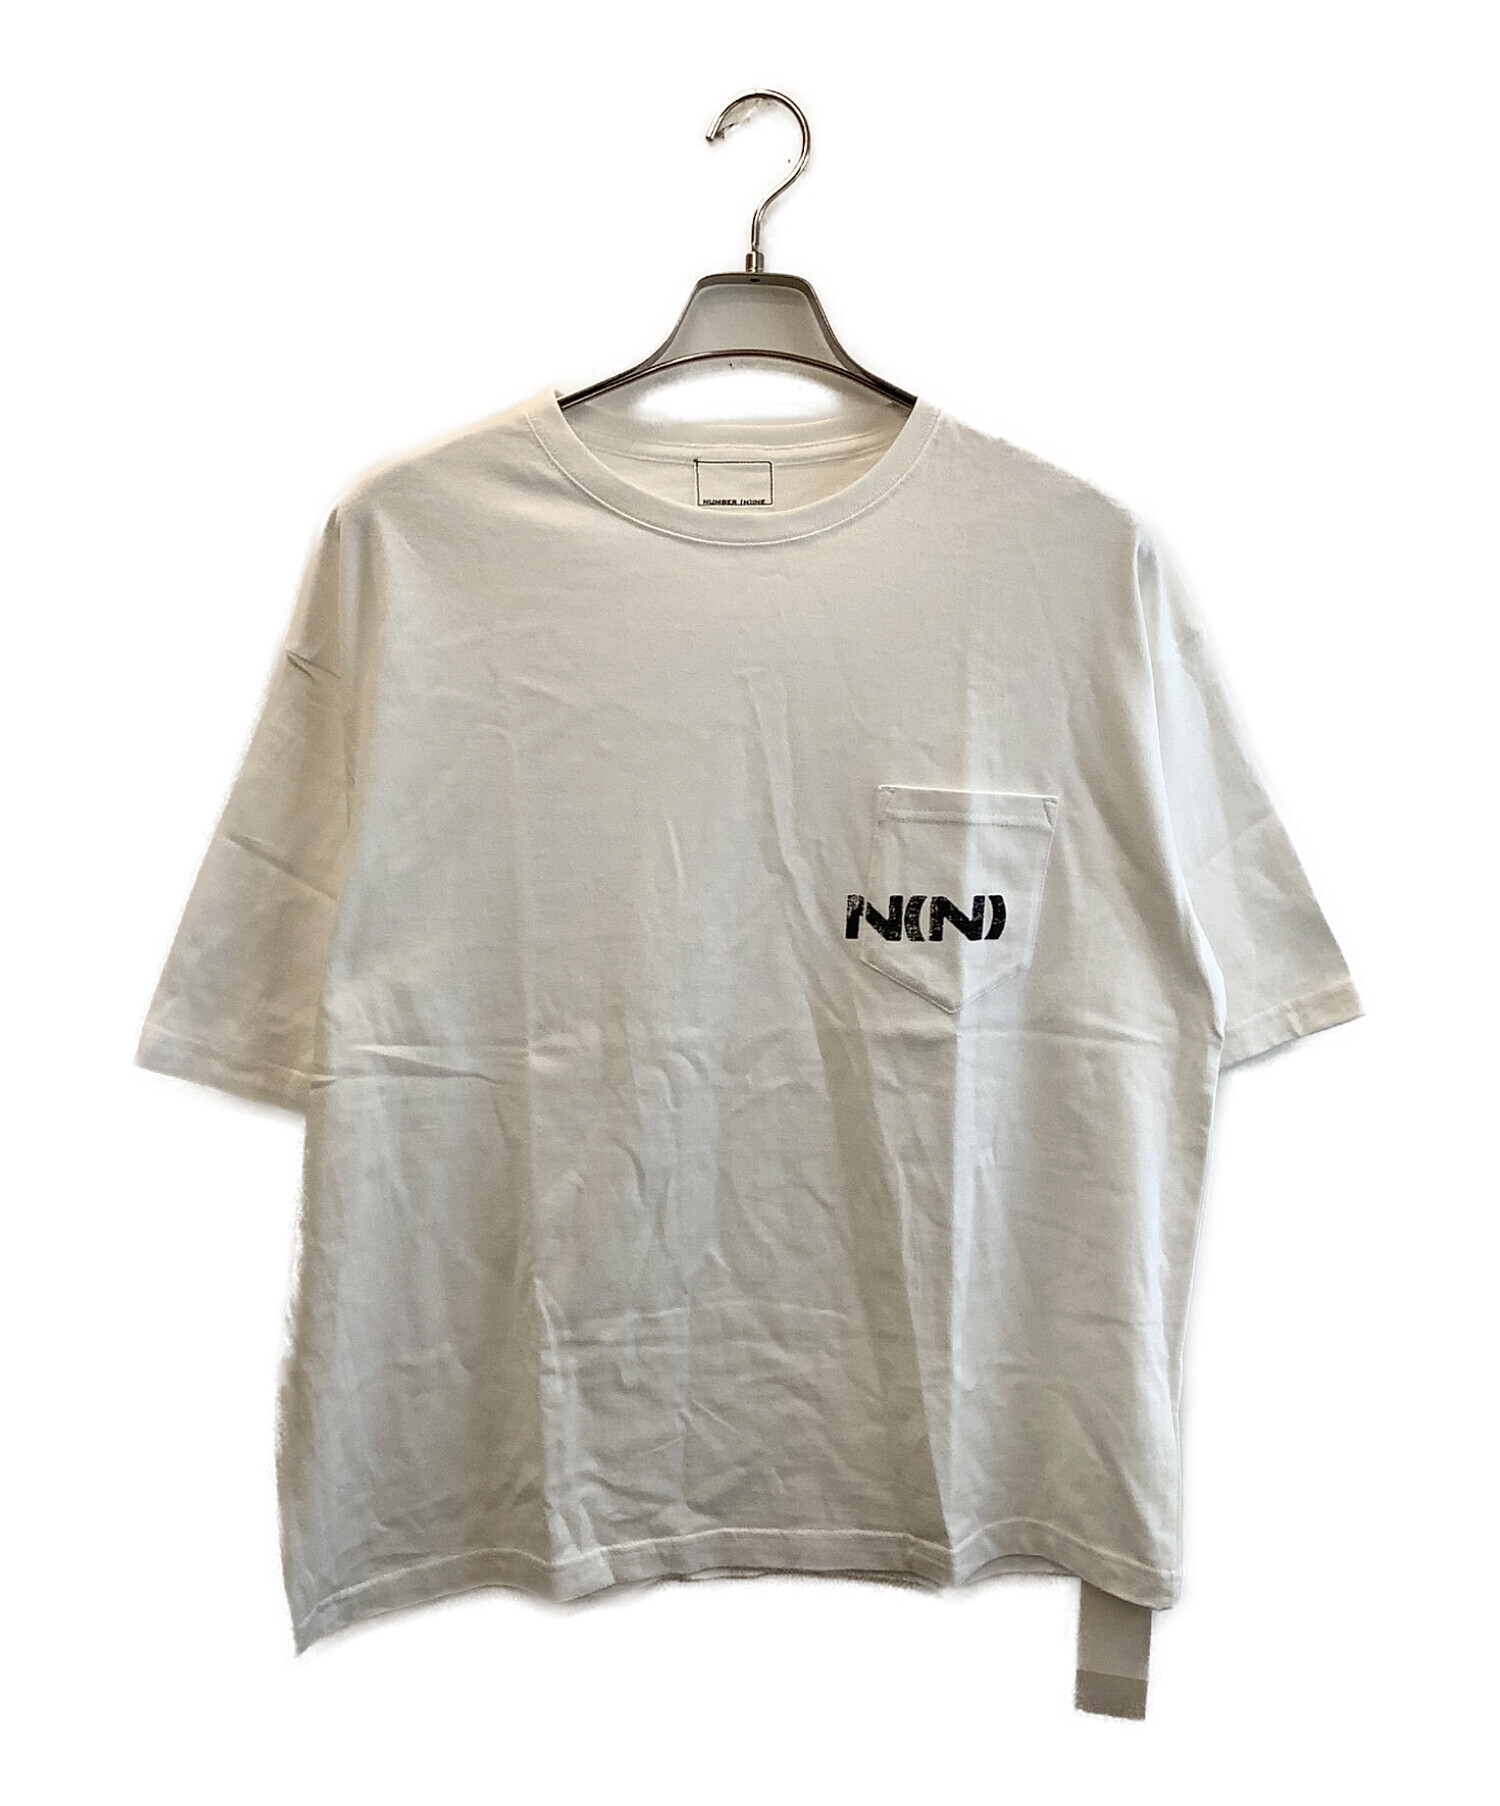 中古・古着通販】NUMBER (N)INE (ナンバーナイン) ポケットTシャツ